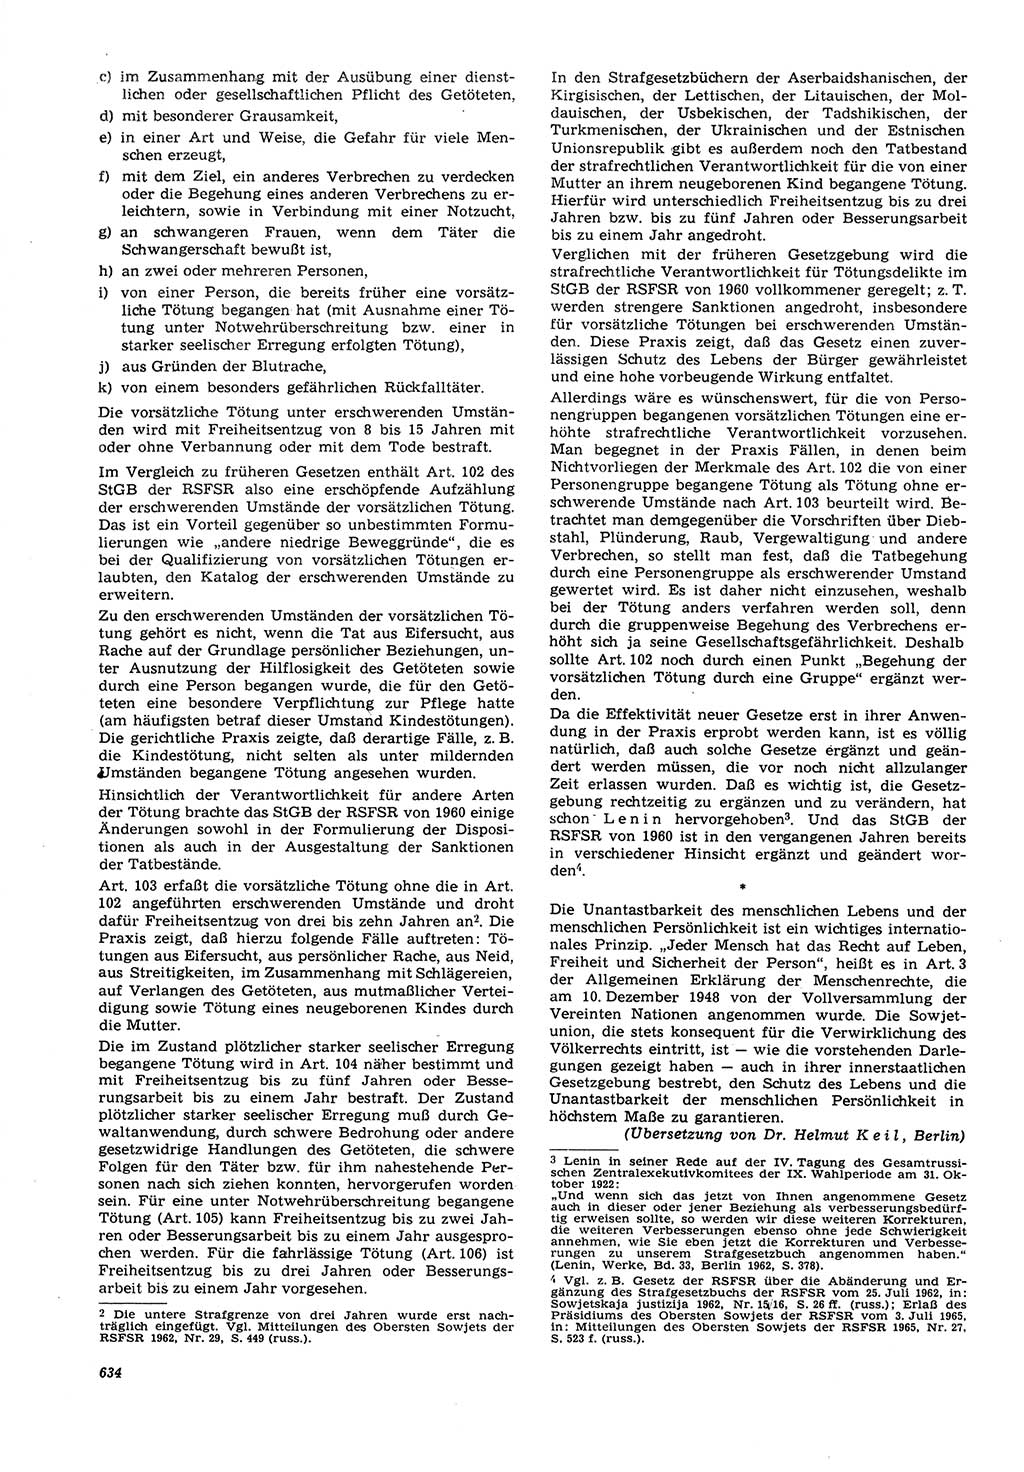 Neue Justiz (NJ), Zeitschrift für Recht und Rechtswissenschaft [Deutsche Demokratische Republik (DDR)], 21. Jahrgang 1967, Seite 634 (NJ DDR 1967, S. 634)